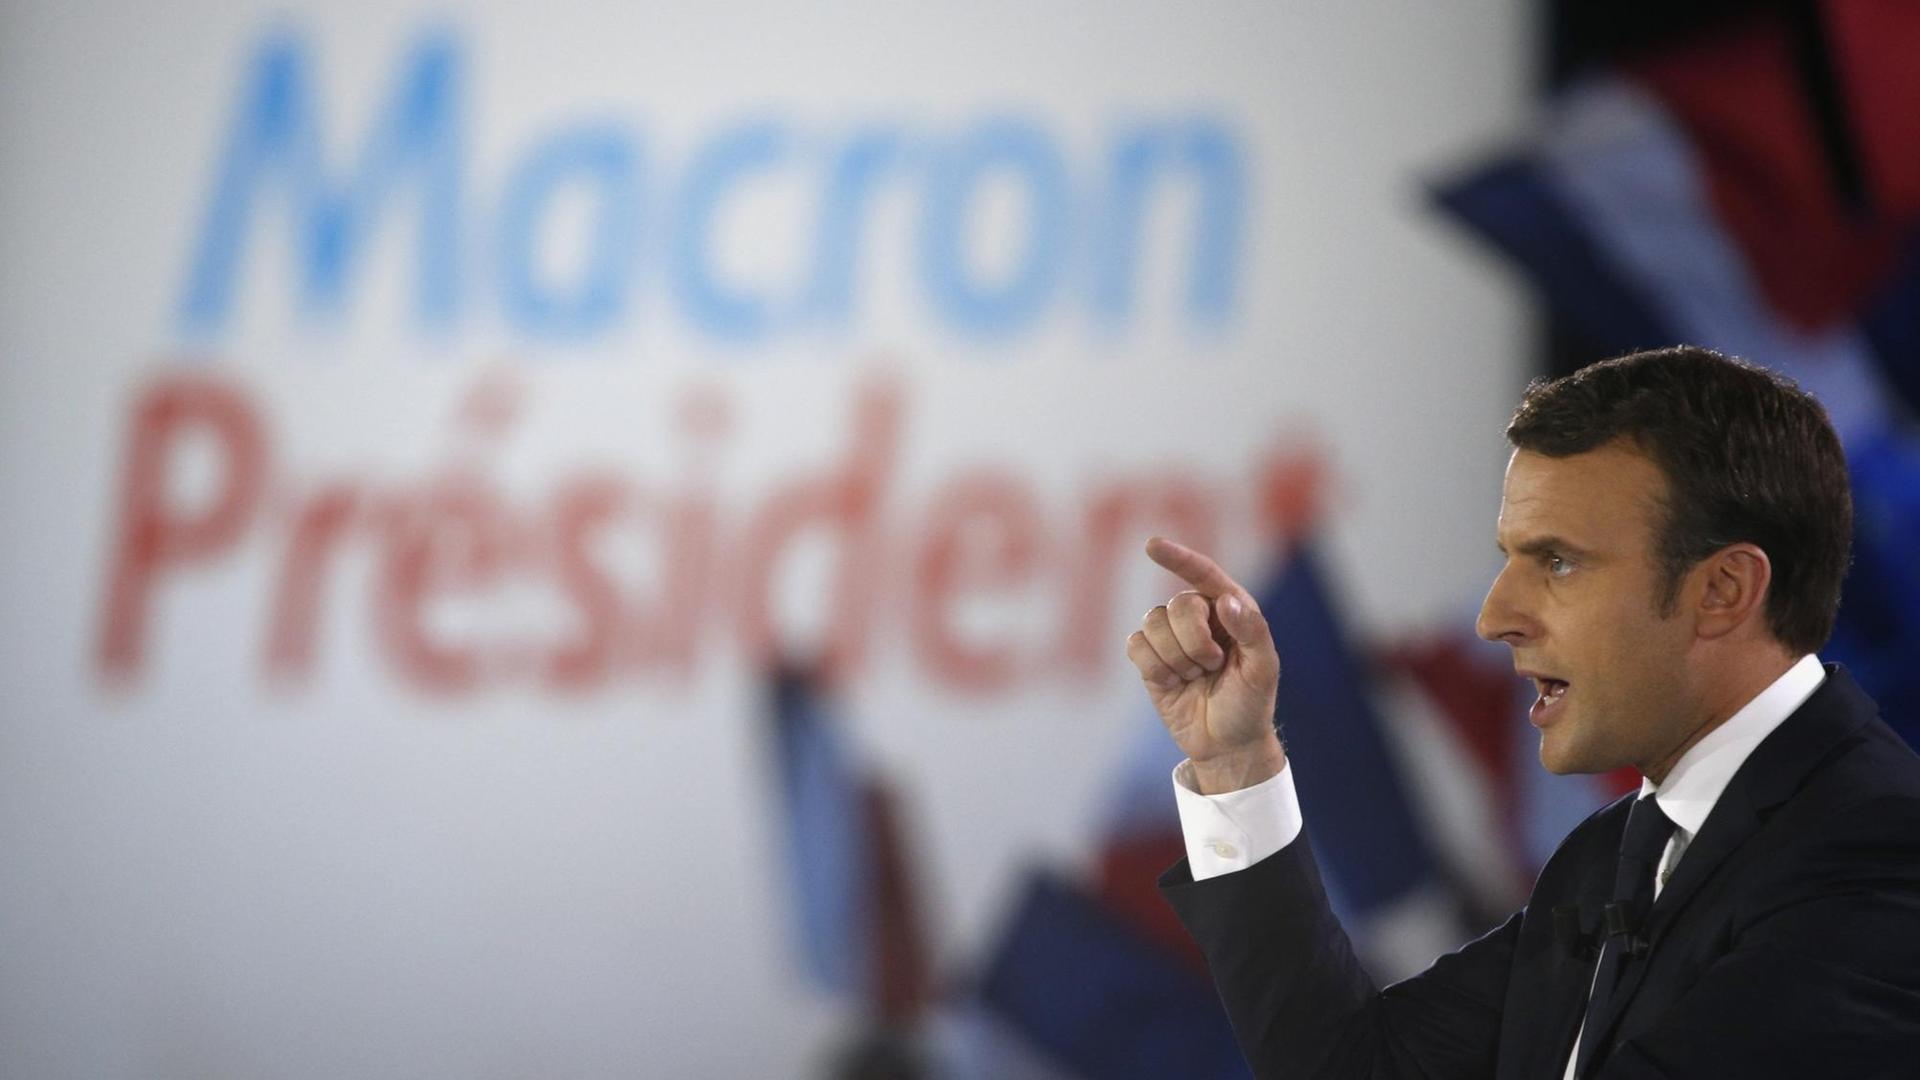 Der Präsidentschaftskandidat der Bewegung En Marche, Emmanuel Macron, bei einer Rede am 1. Mai während seines Wahlkampfs.